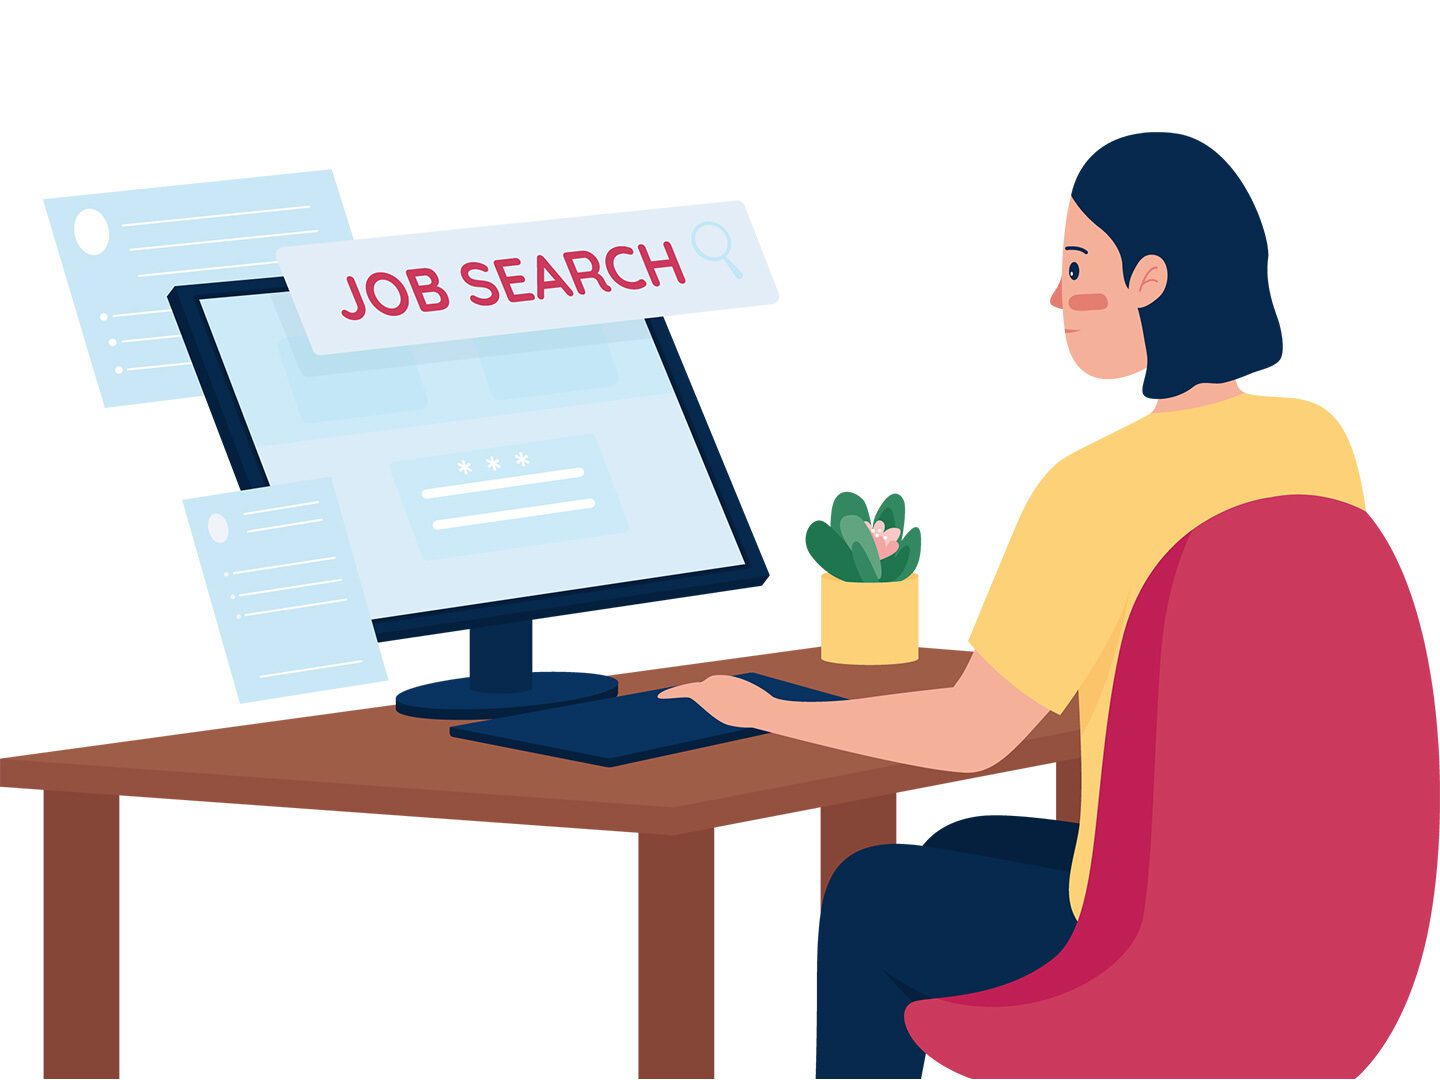 Eine Illustration einer Person, die vor einem Rechner sitzt und nach Jobs sucht.